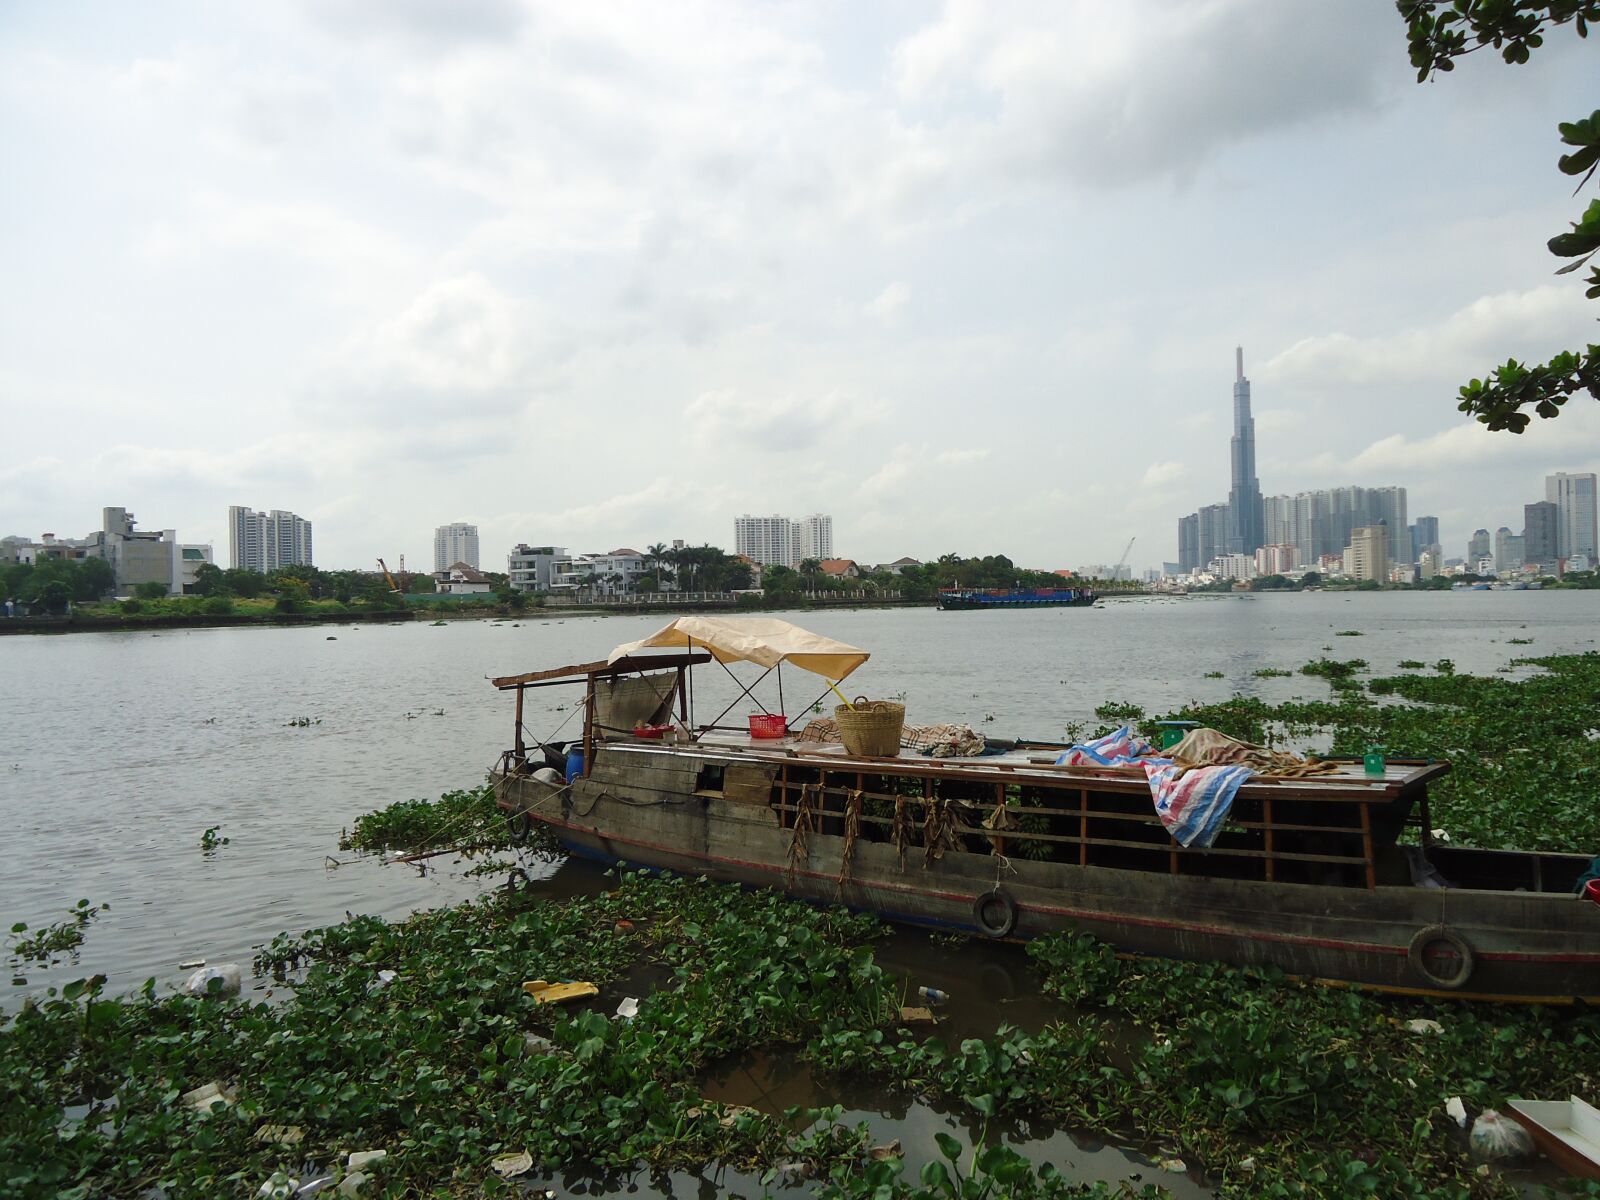 Sony Cyber-shot DSC-W530 sample photo. River landscape seven, city photography